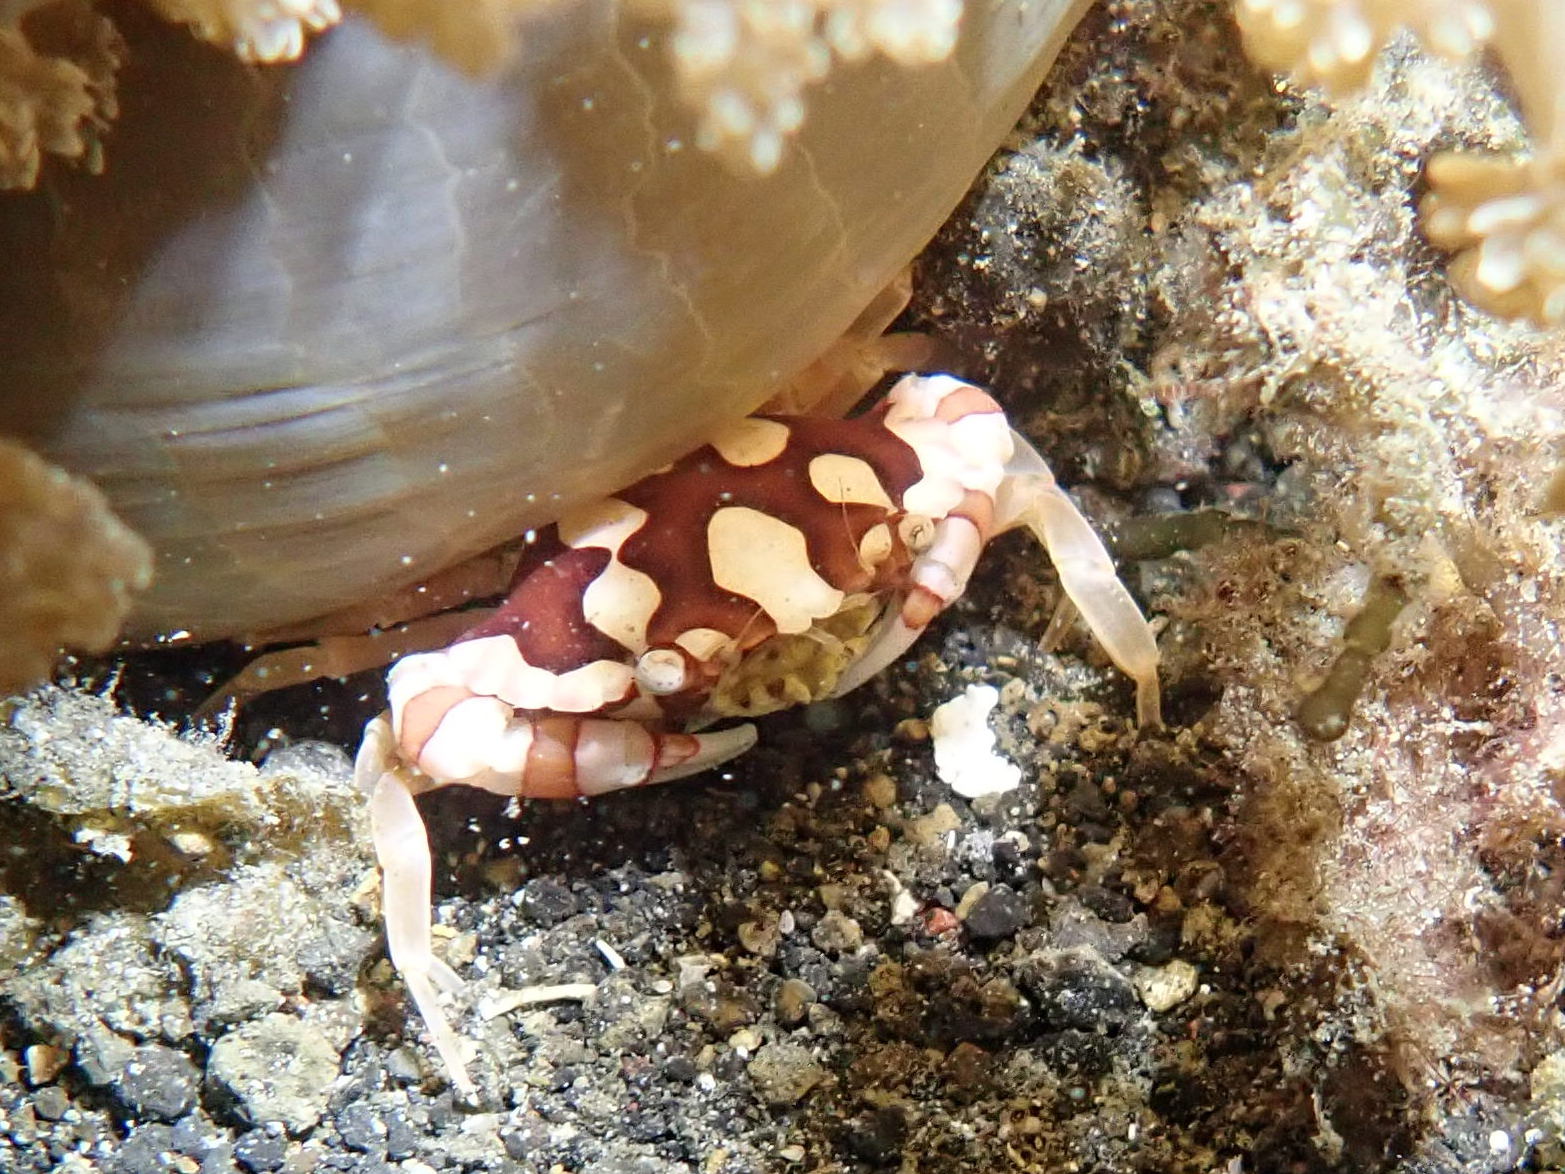 Crabs Crustaceans Marine Life SEA Undersea